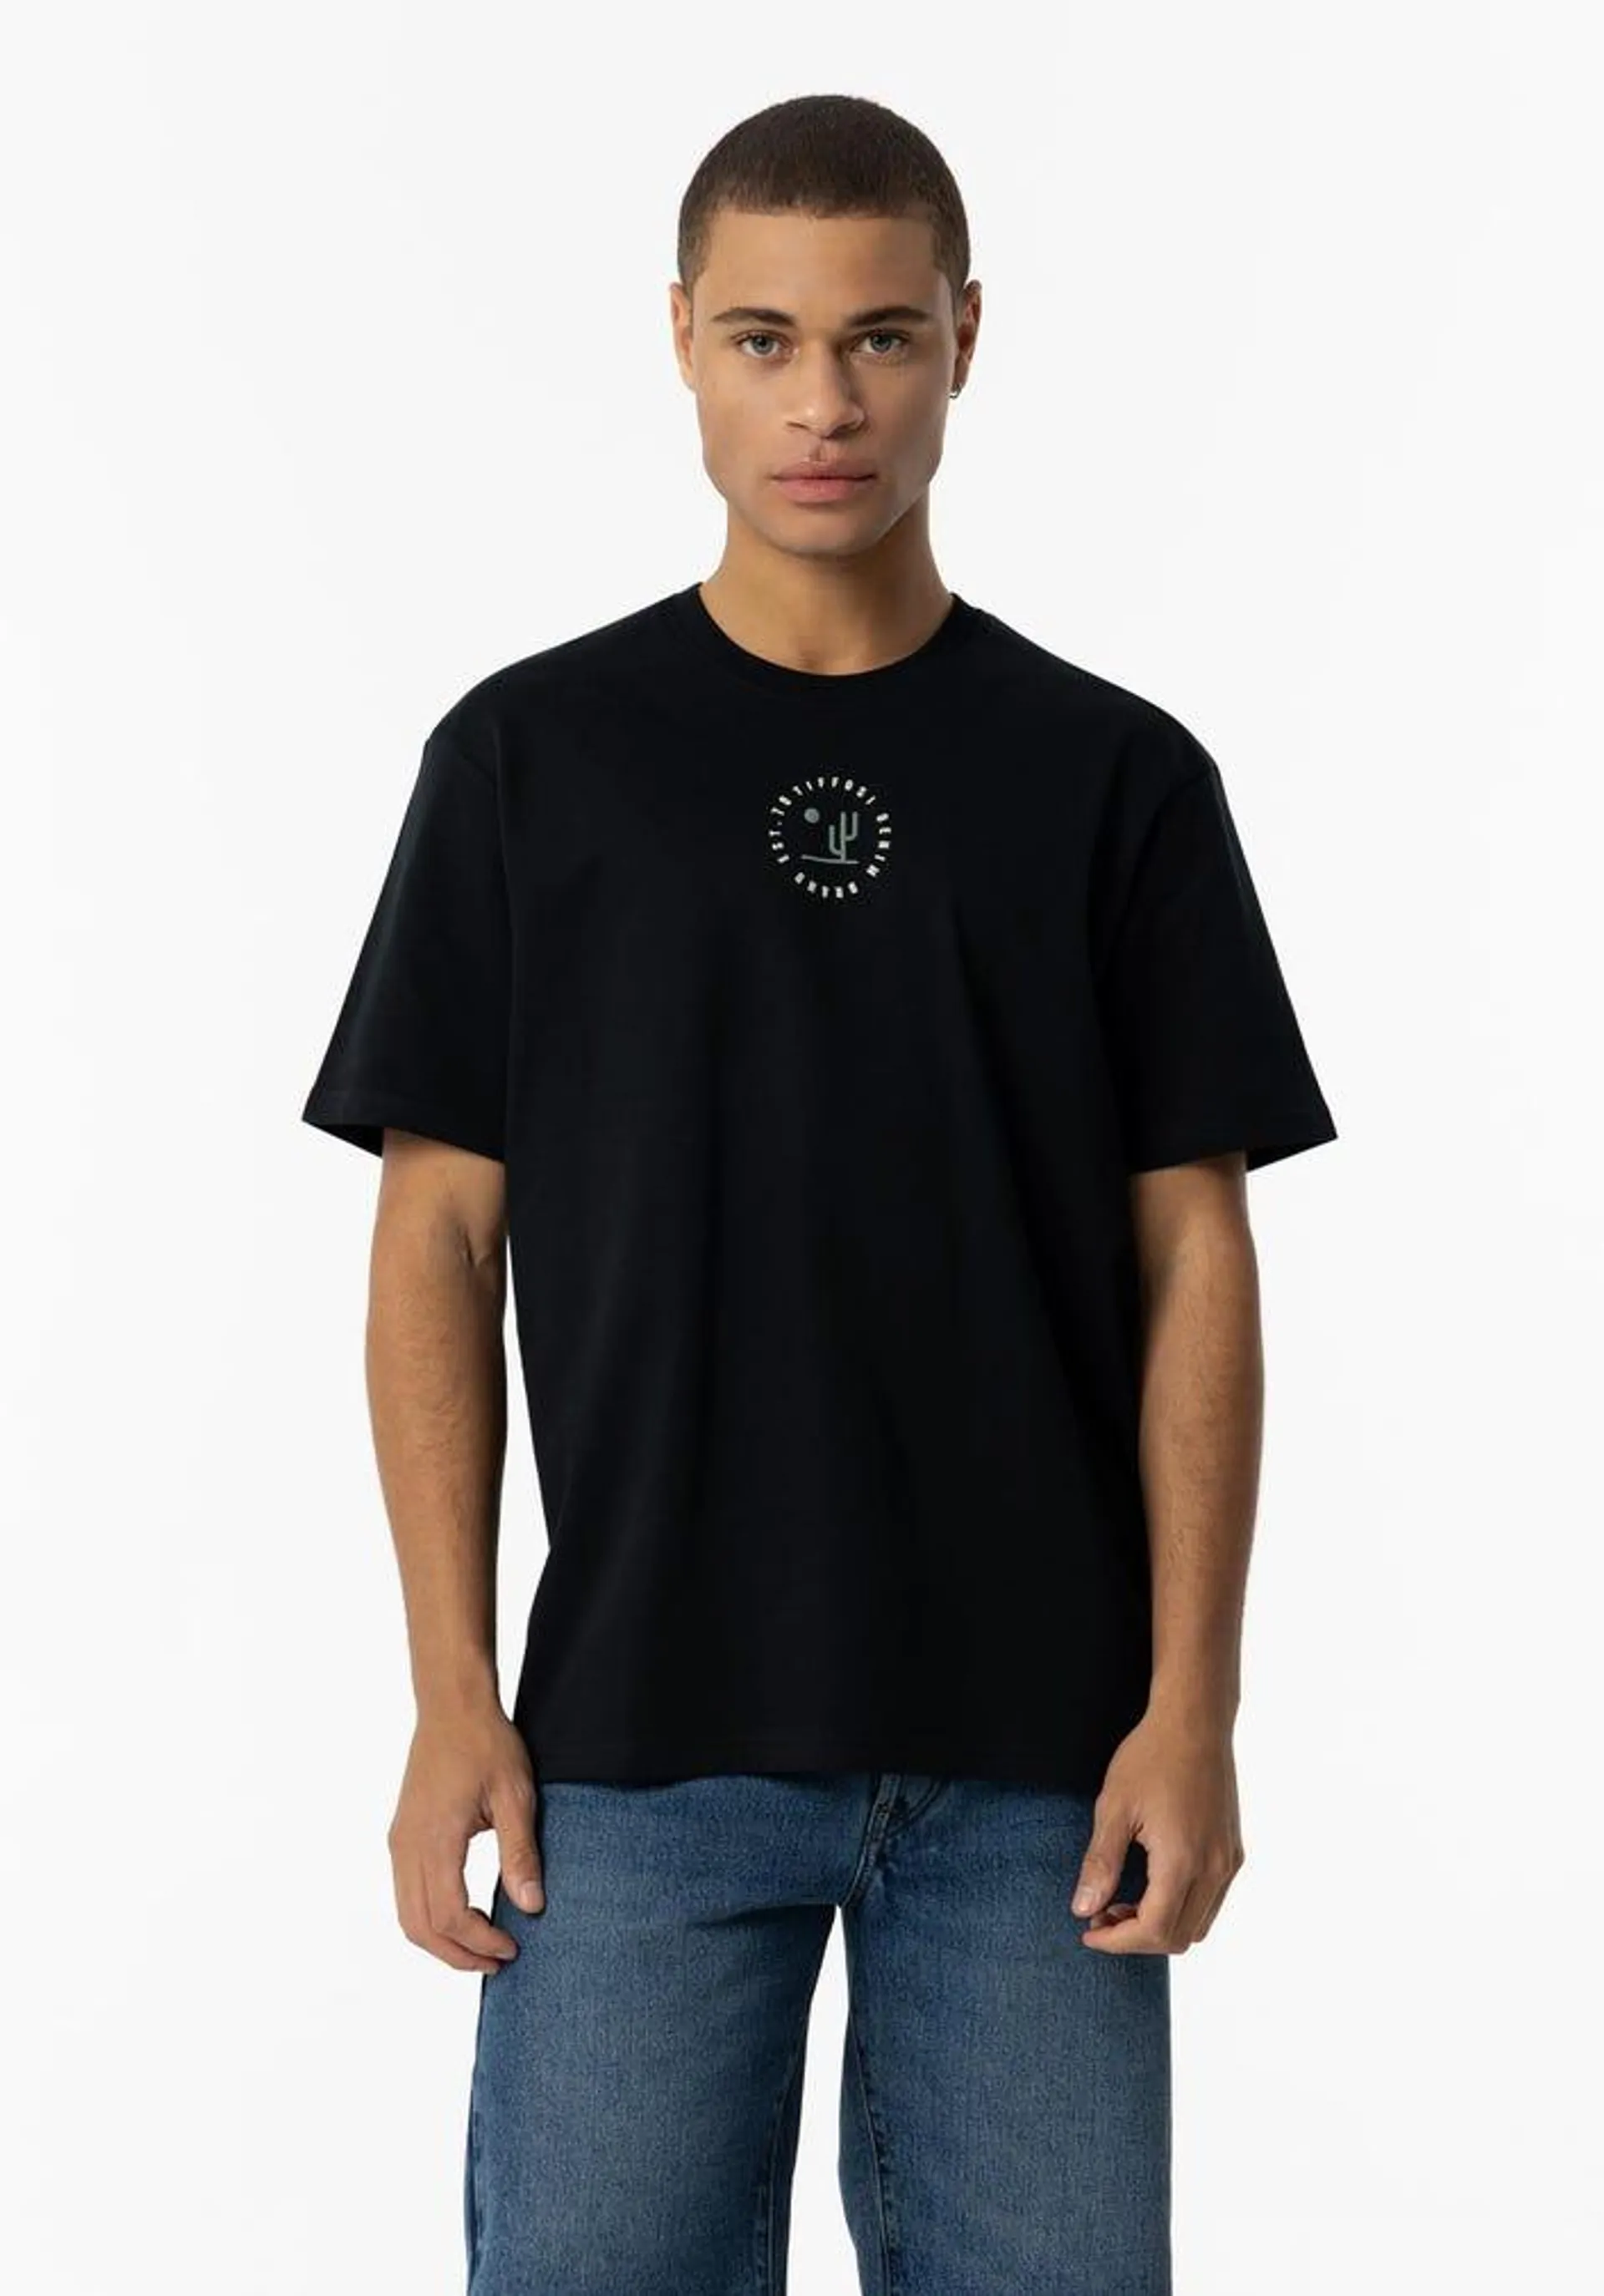 T-shirt Estampado Frontal com Relevo